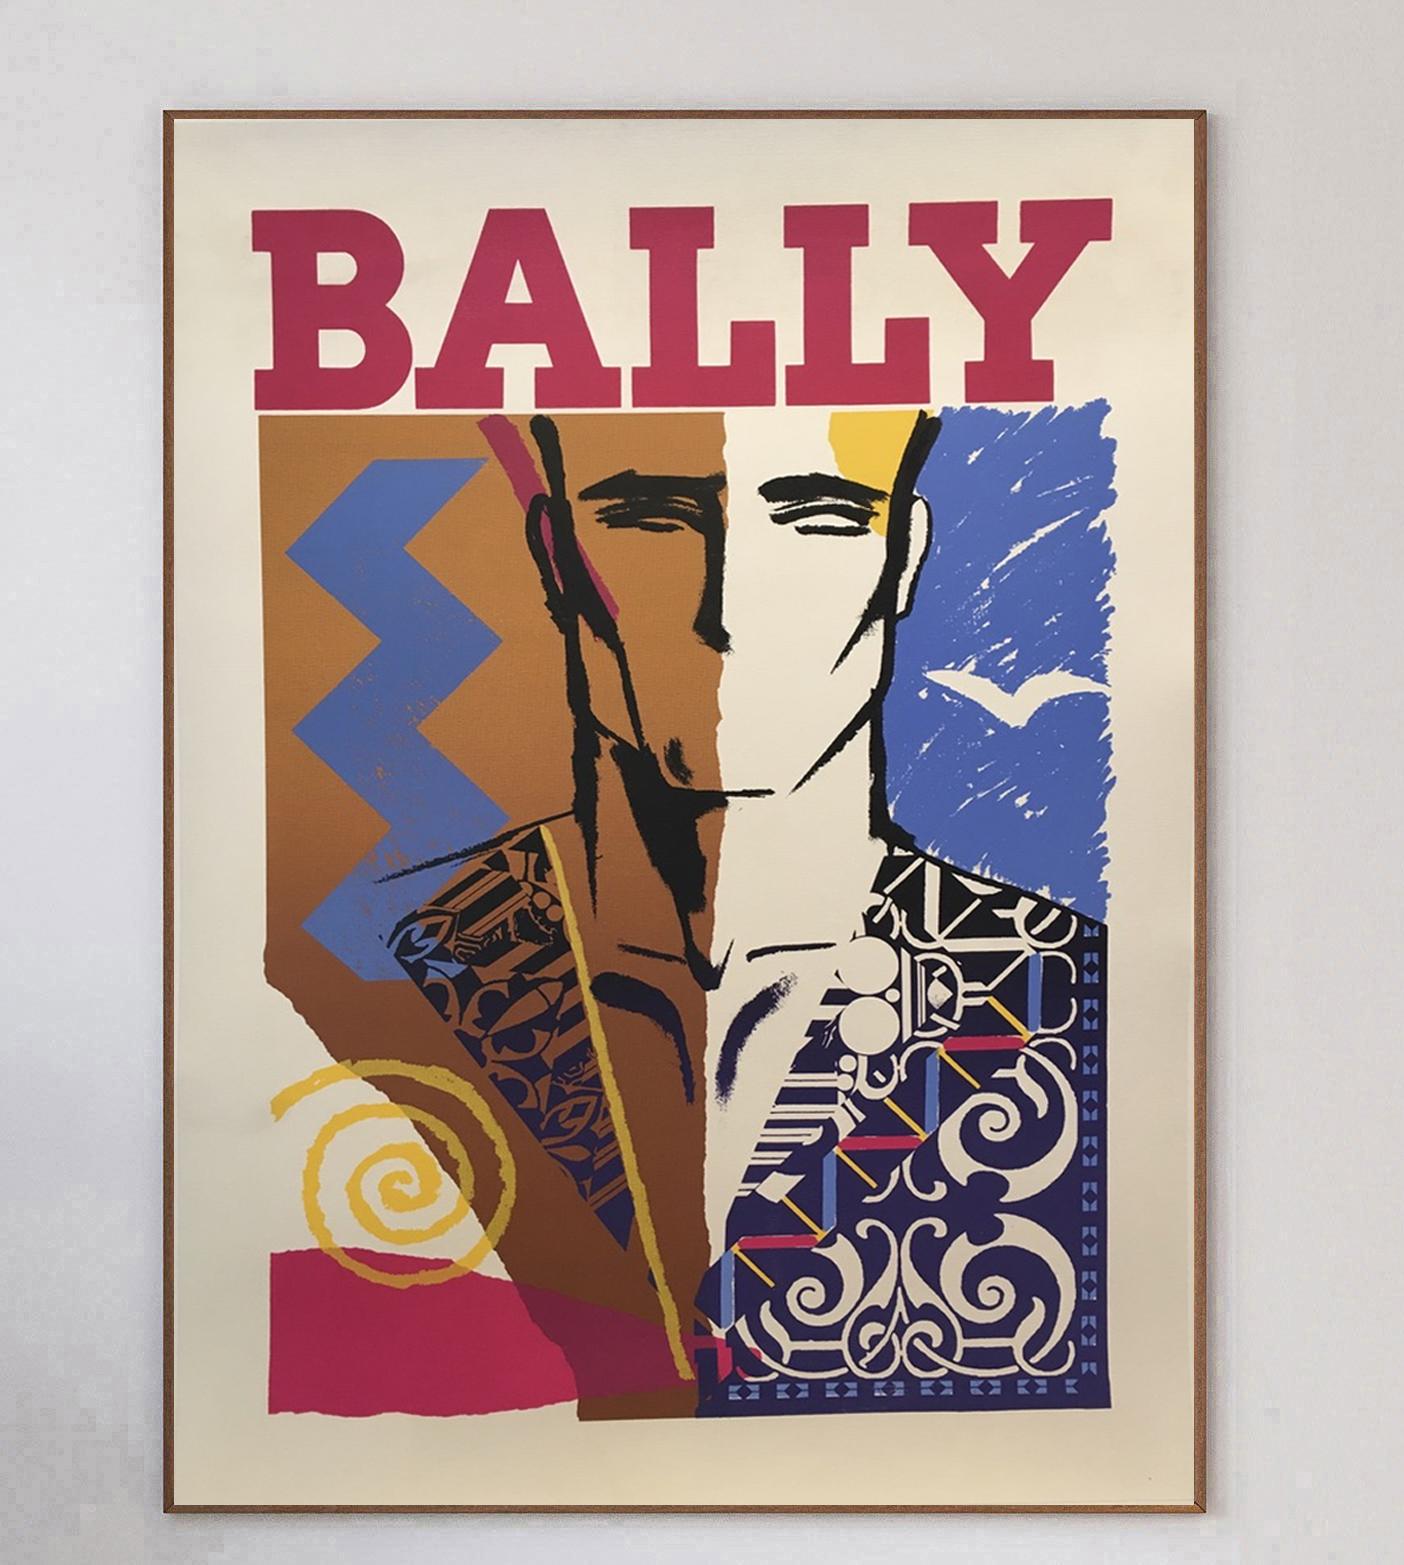 Comptant parmi les designs les plus emblématiques et les plus recherchés du 20e siècle, les affiches de Bally illustrent le croisement entre la publicité et les beaux-arts.

Le chausseur suisse de luxe a travaillé avec une série d'affichistes